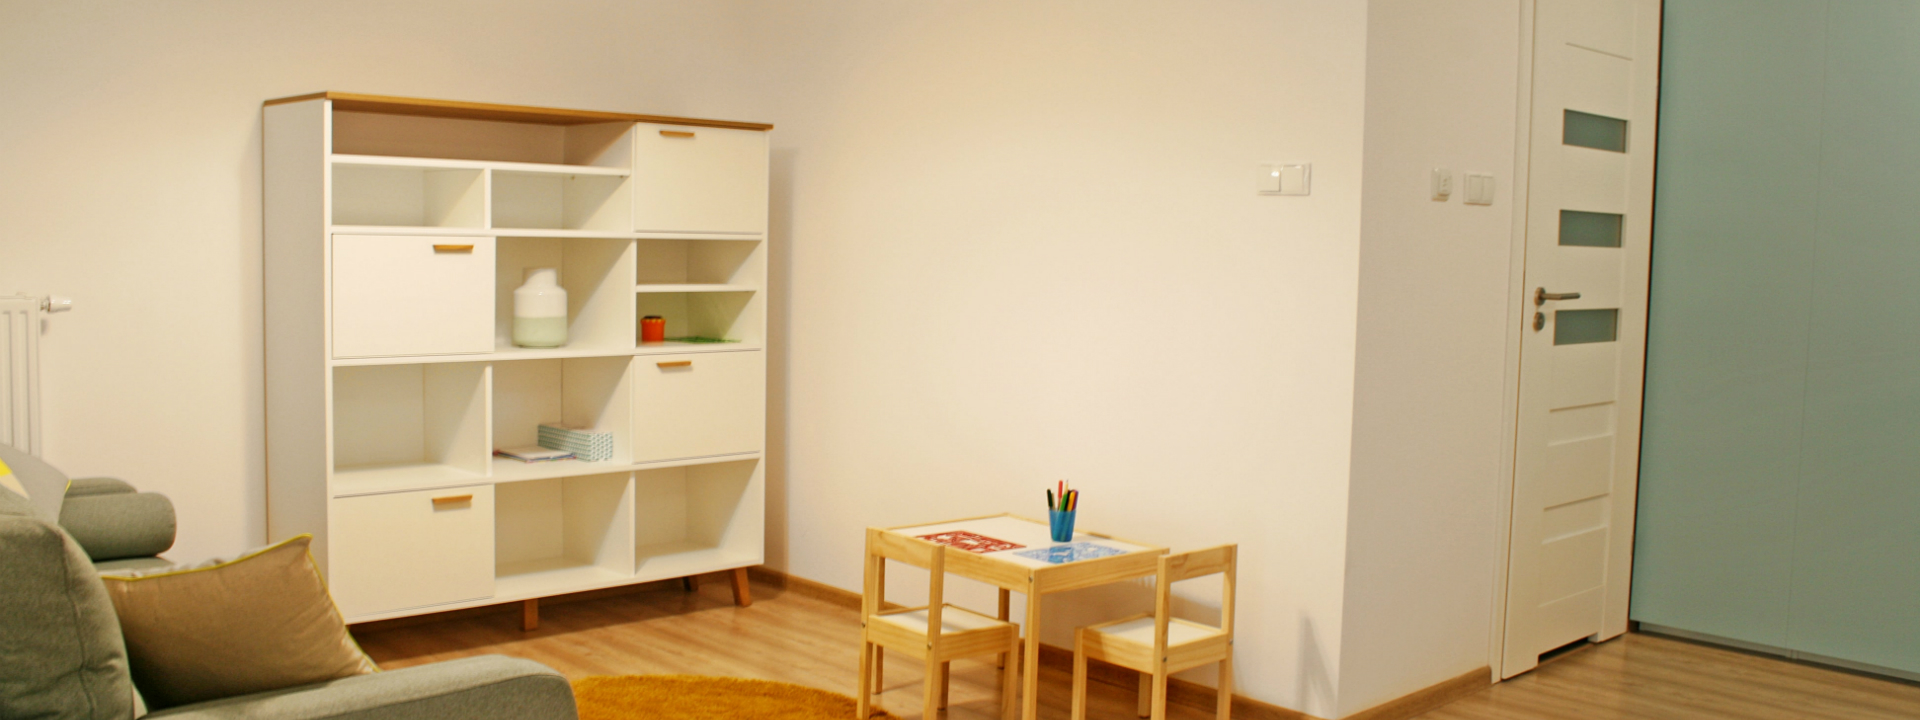 Apartament Portino w Kołobrzegu – pokój wypoczynkowy z kącikiem zabaw dla dzieci